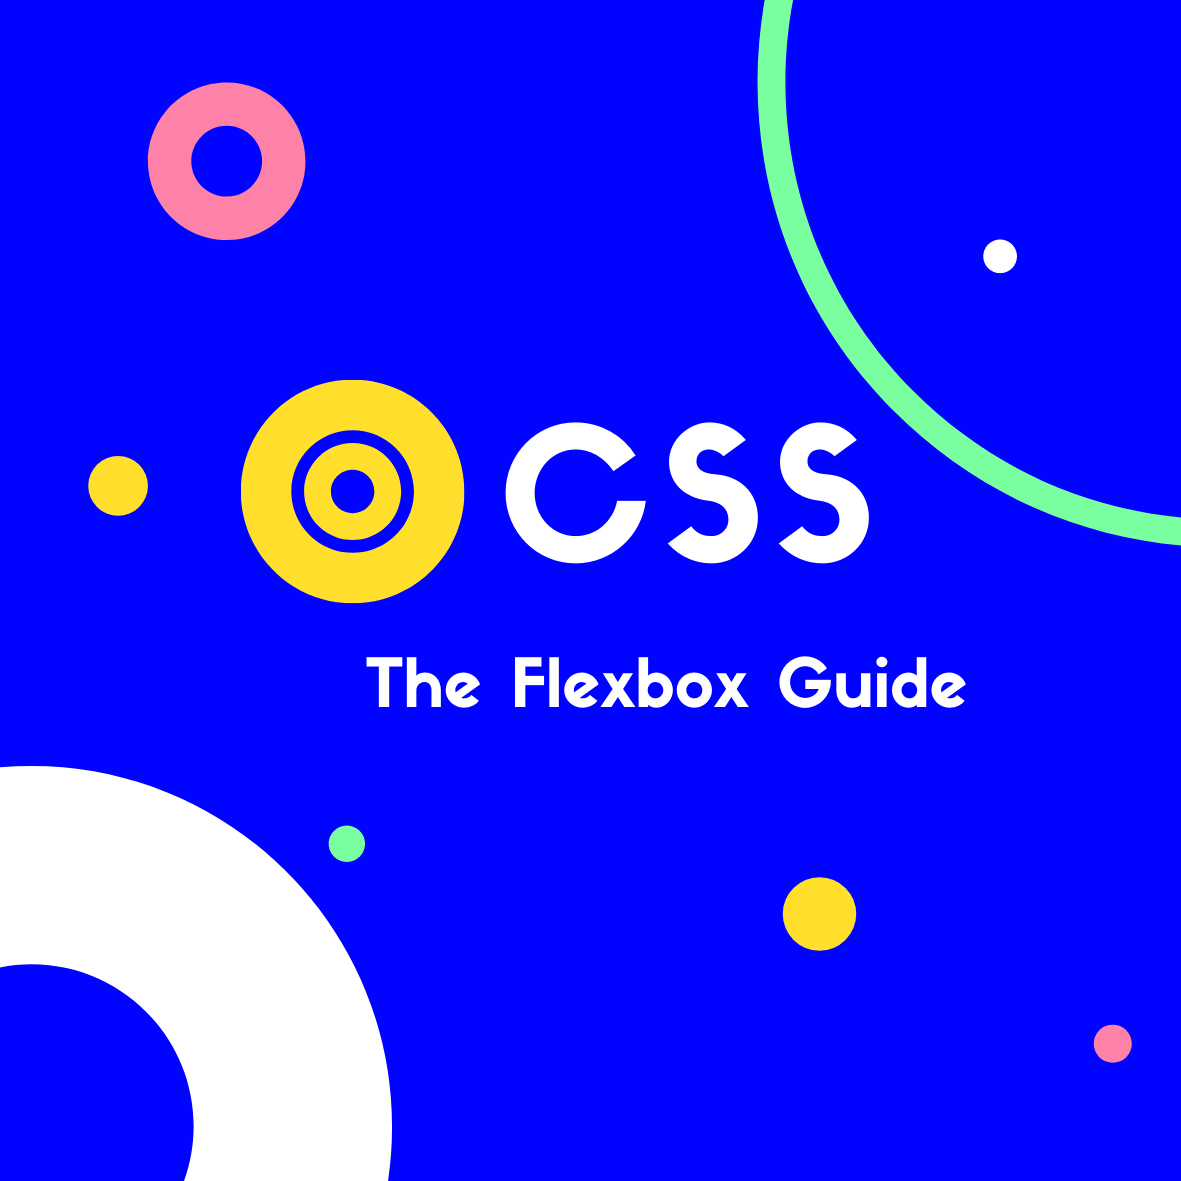 The Flexbox Guide